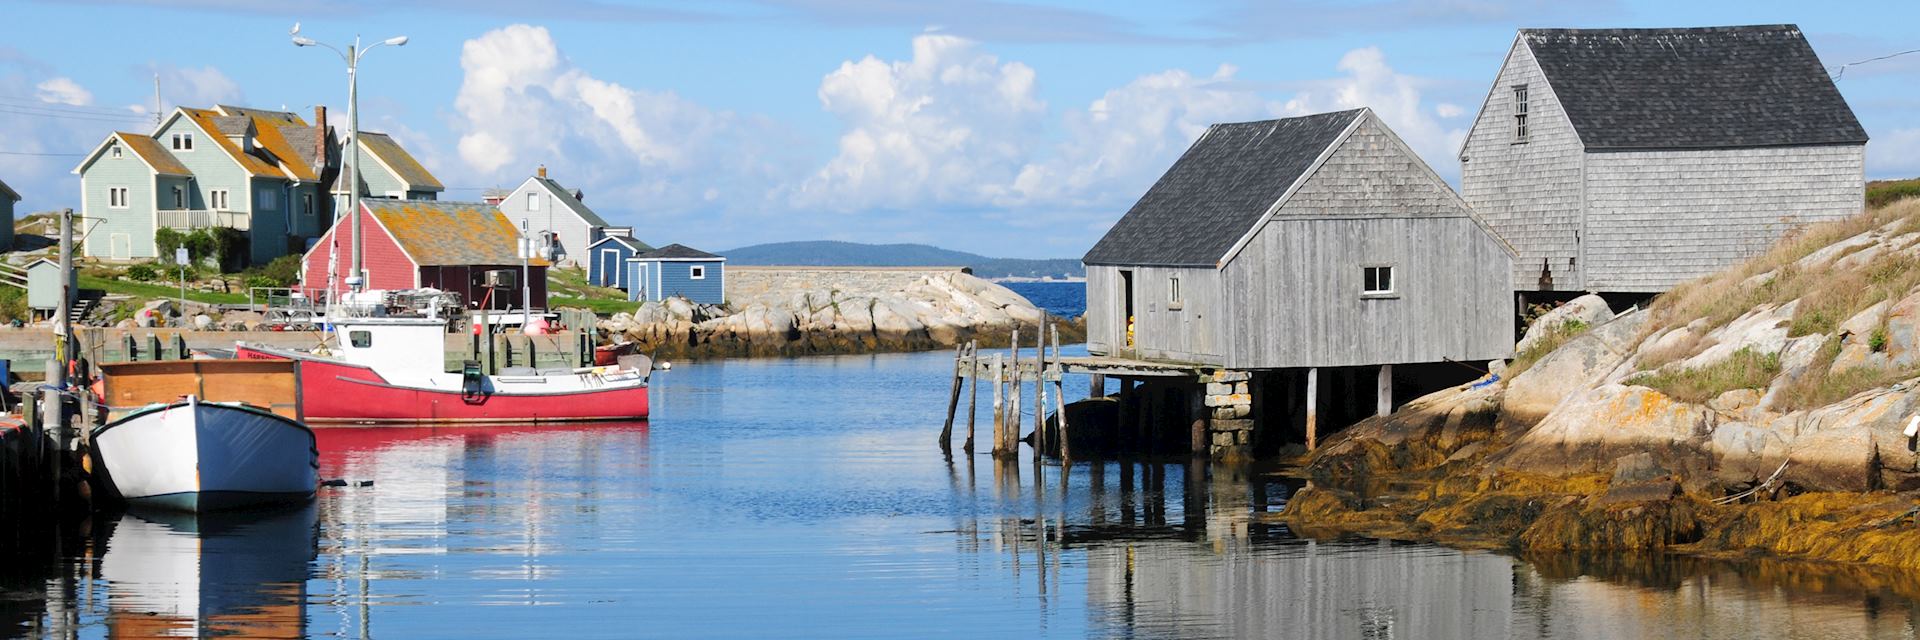 Các tỉnh ven biển của Canada là điểm đến hoàn hảo cho những người yêu thích sự êm đềm và hòa mình vào thiên nhiên. Xem hình ảnh để khám phá vẻ đẹp của các tỉnh Nova Scotia, New Brunswick và Prince Edward Island.